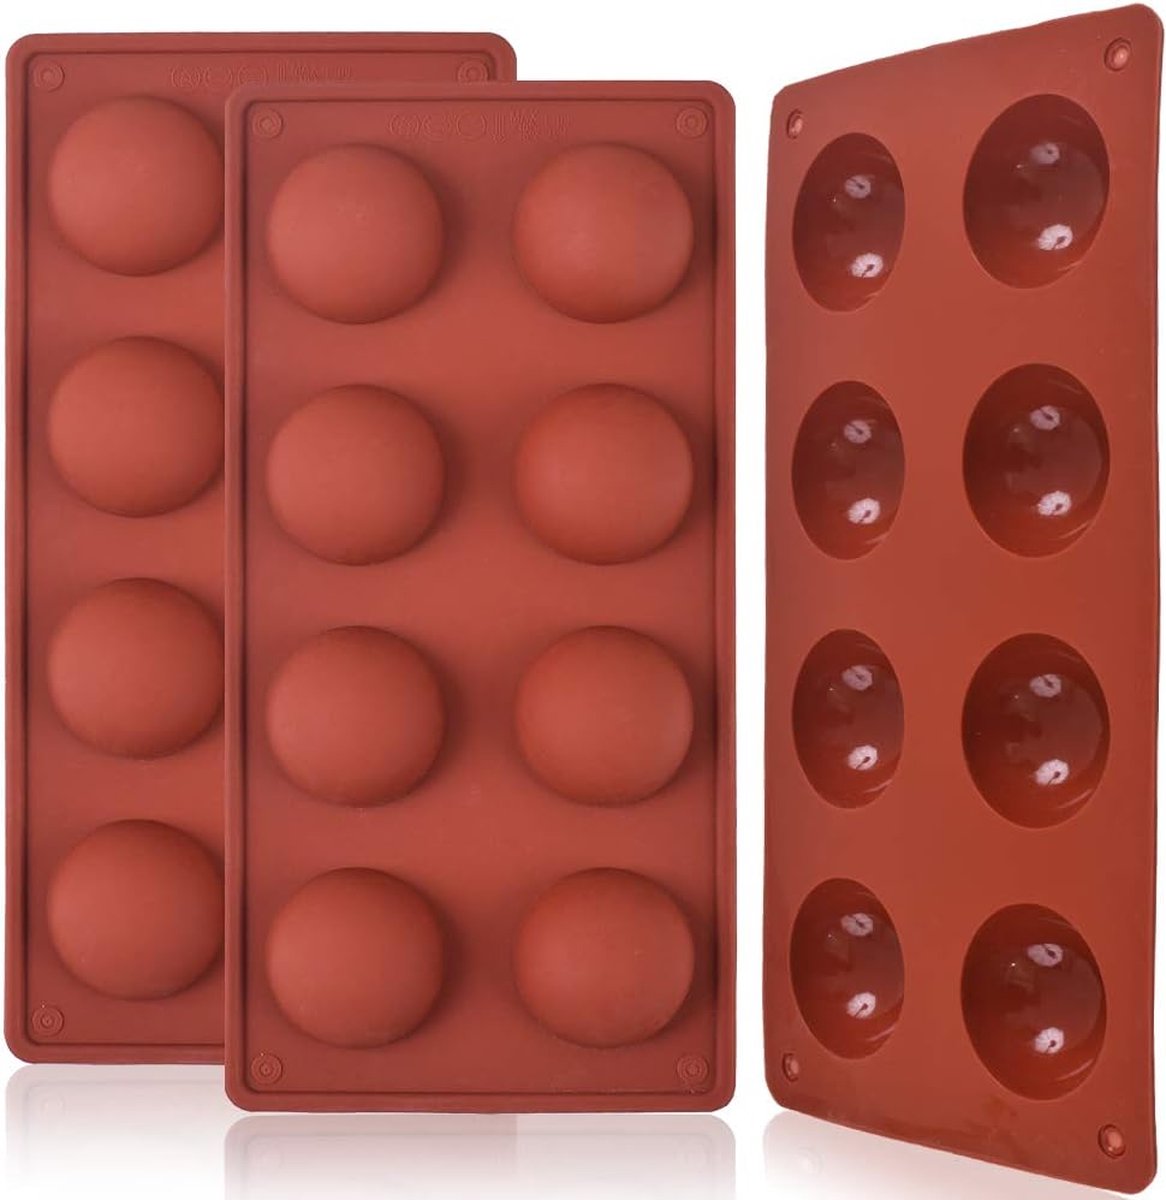 8 gaten halve bal 8 holte halfrond siliconen mal voor het maken van chocoladeballen, cakes, gelei, pudding, koepelmousse